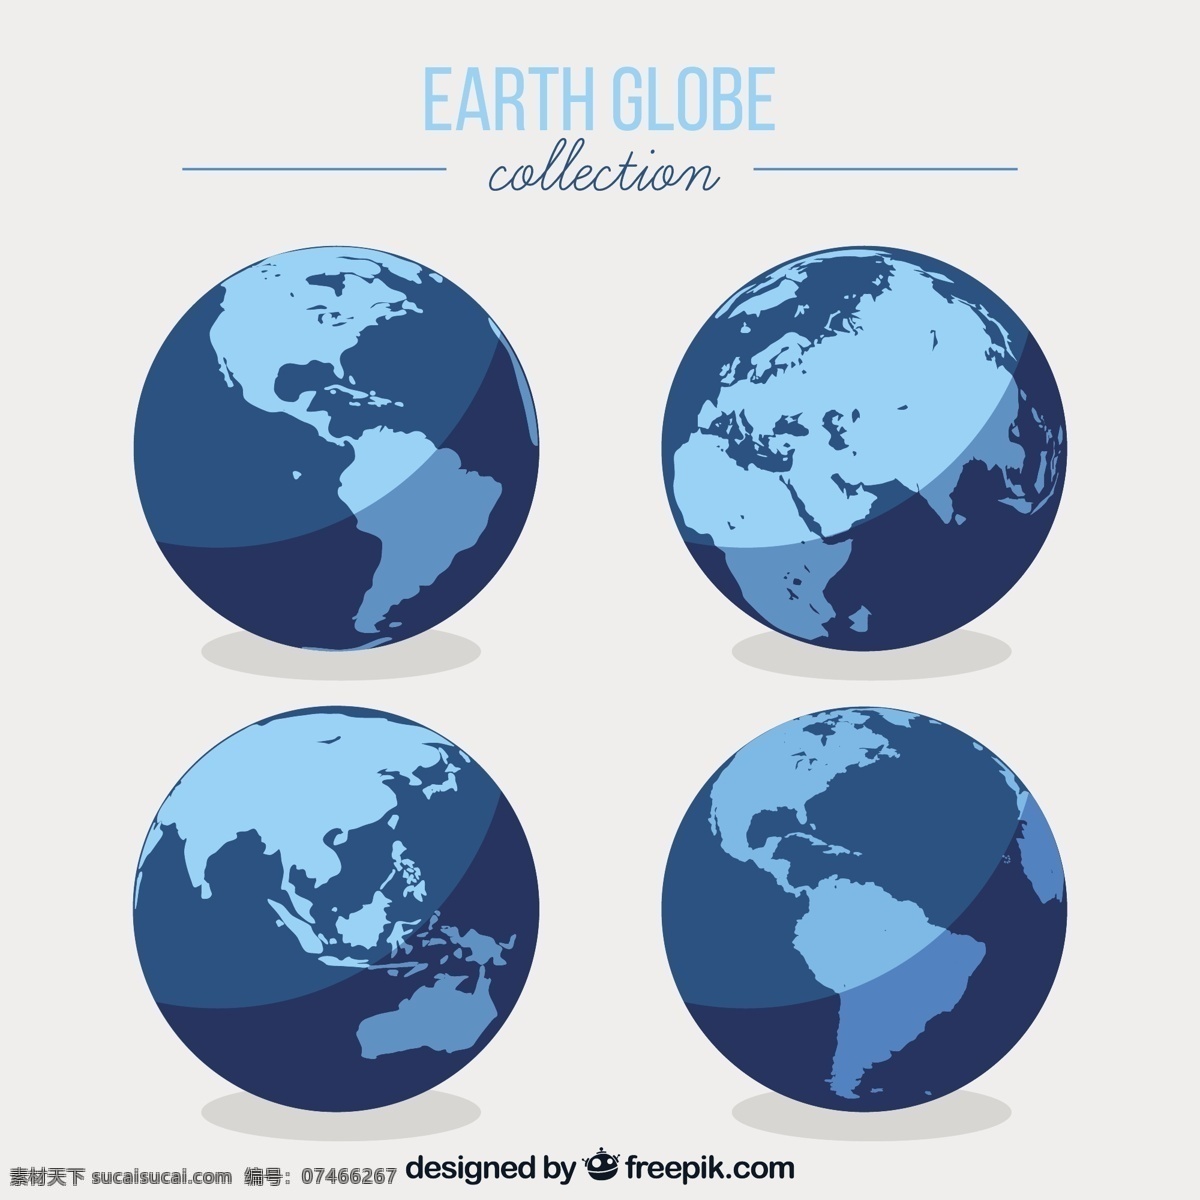 扁平 风格 蓝色 地球 矢量 扁平风格 蓝色地球 矢量素材